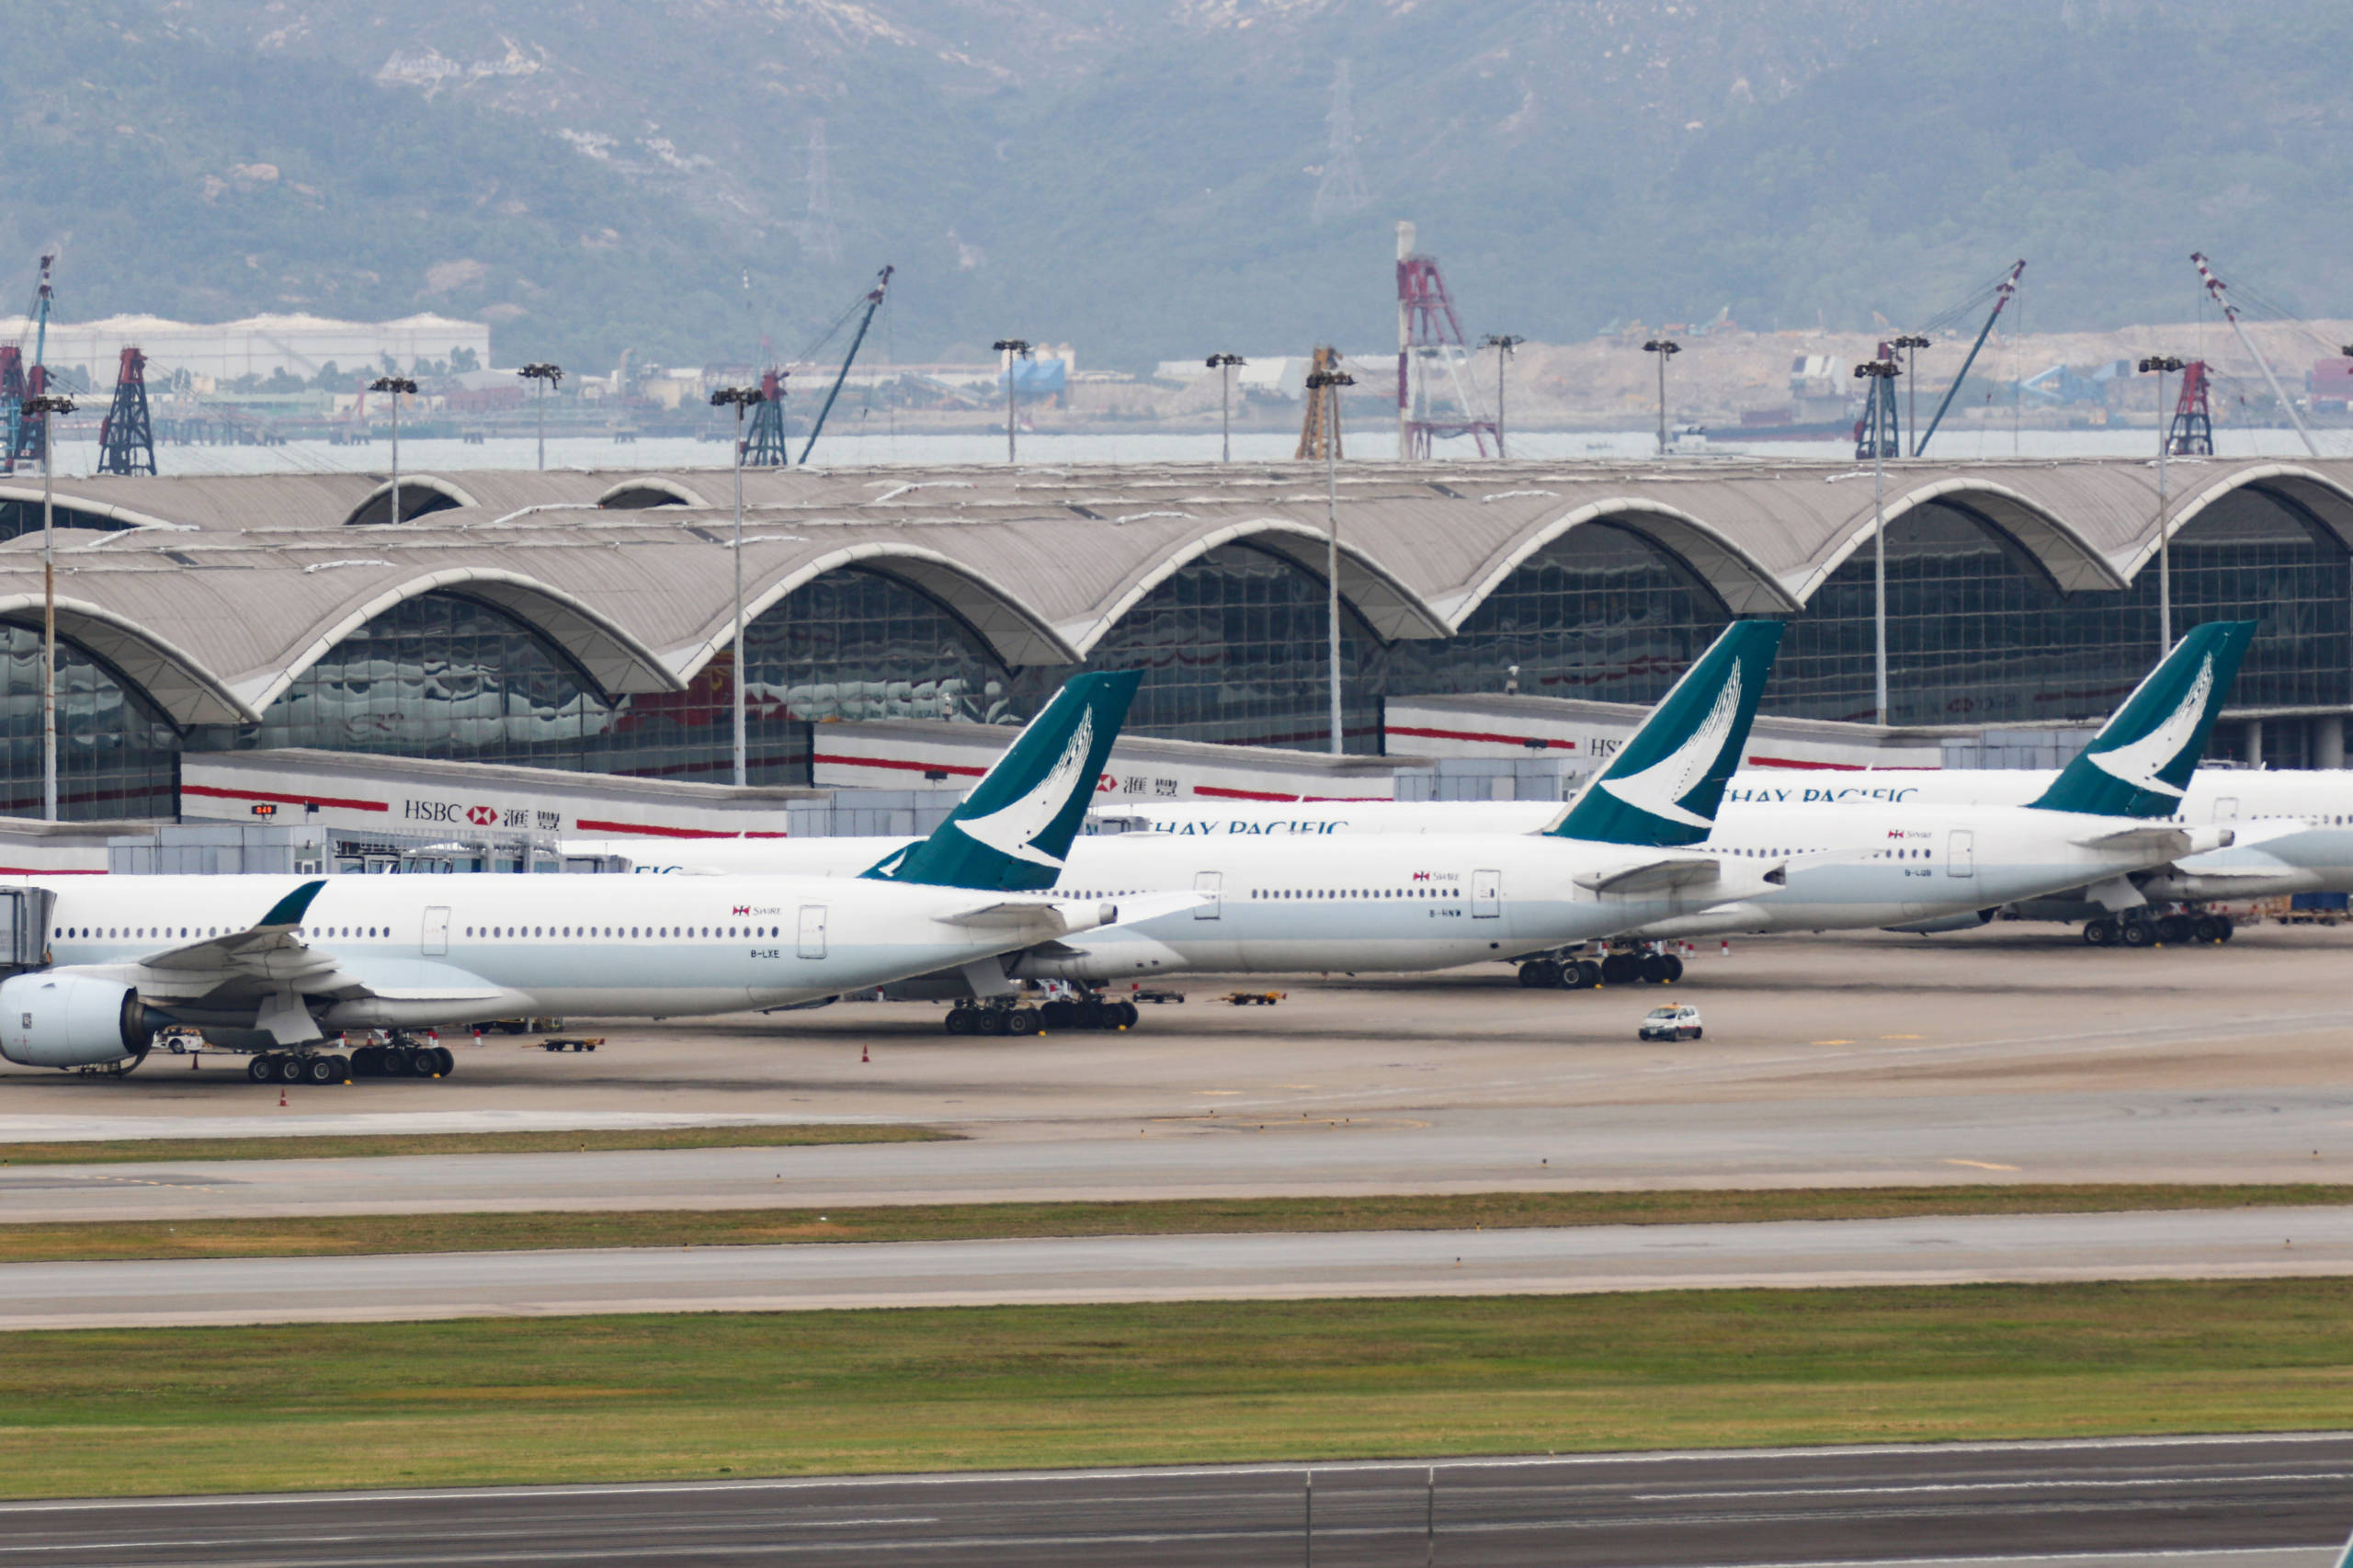 Cathay pacific  aircrafts seen parked at the Hong Kong